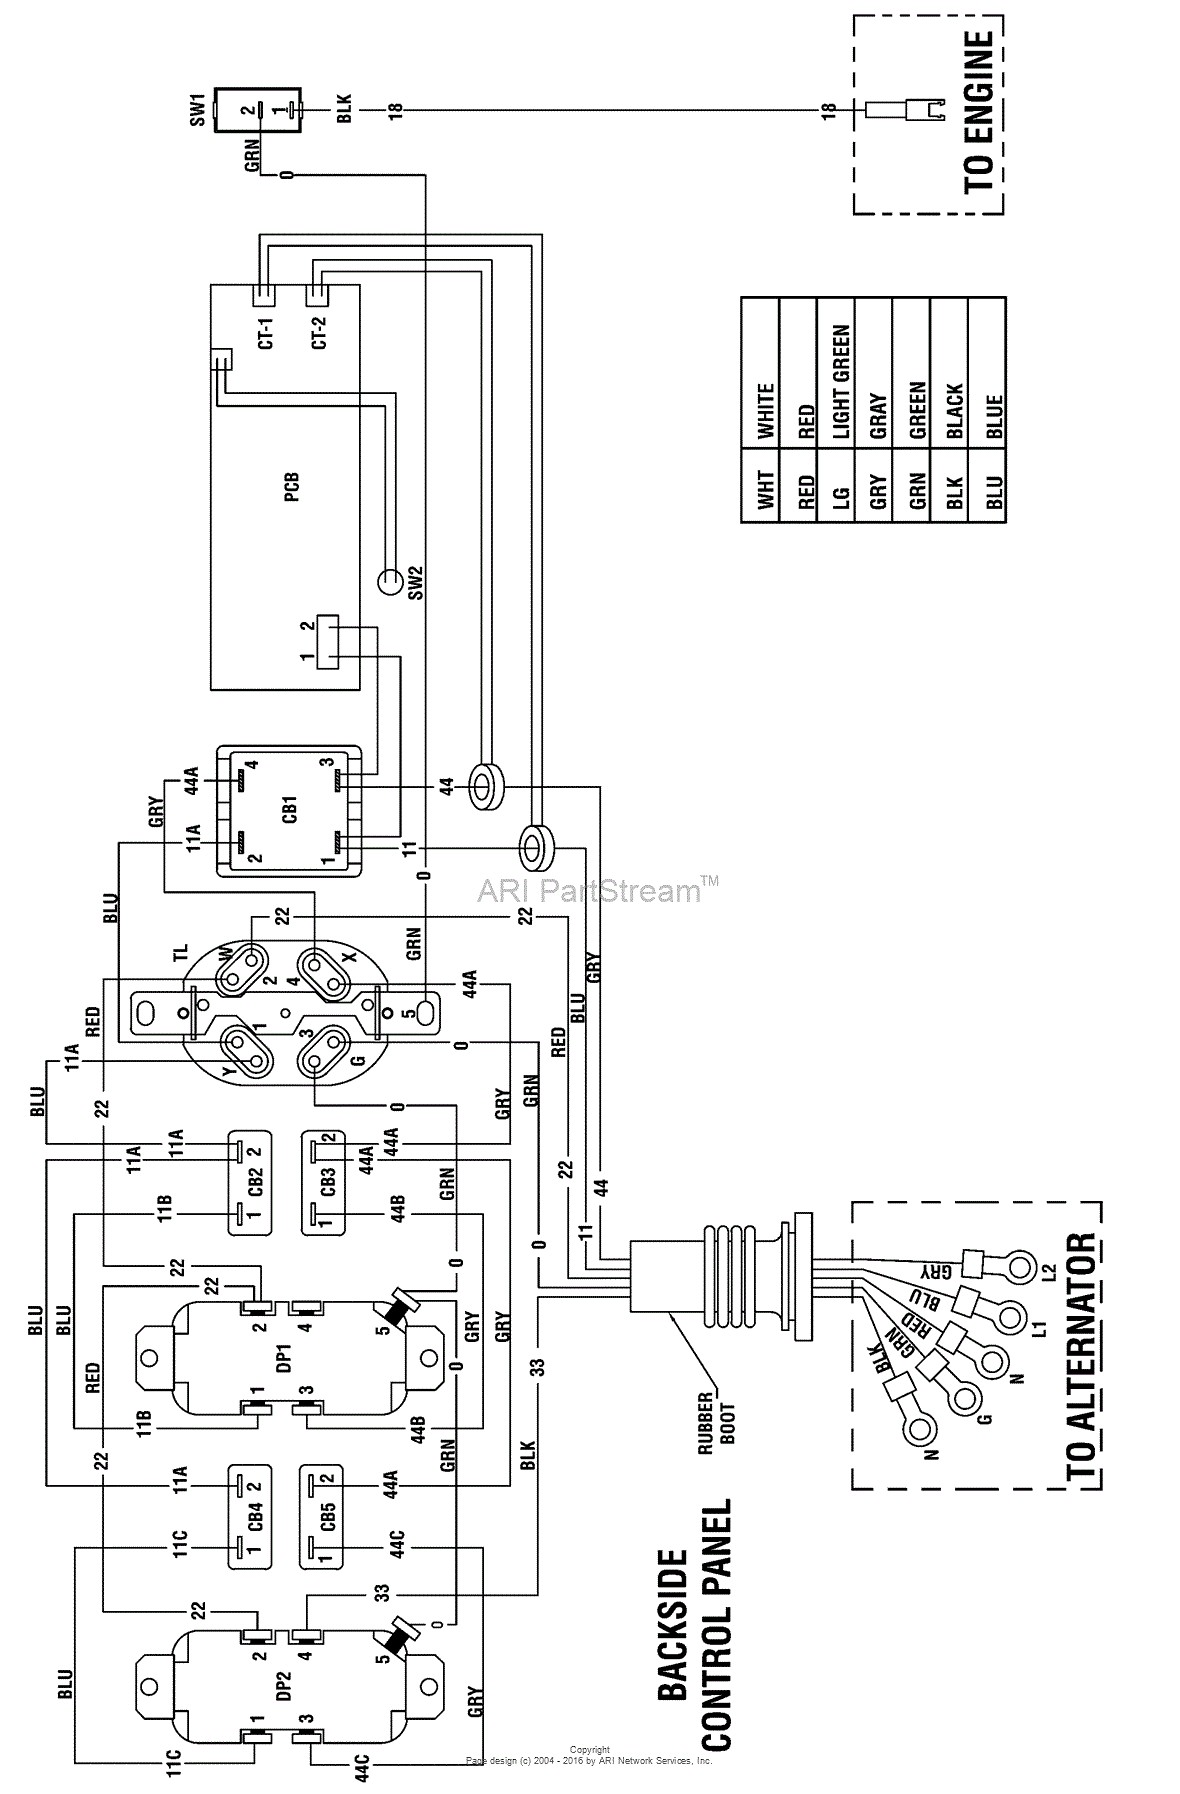 Briggs Stratton Engine Diagram 2 Briggs and Stratton Wiring Diagram Jerrysmasterkeyforyouand Of Briggs Stratton Engine Diagram 2